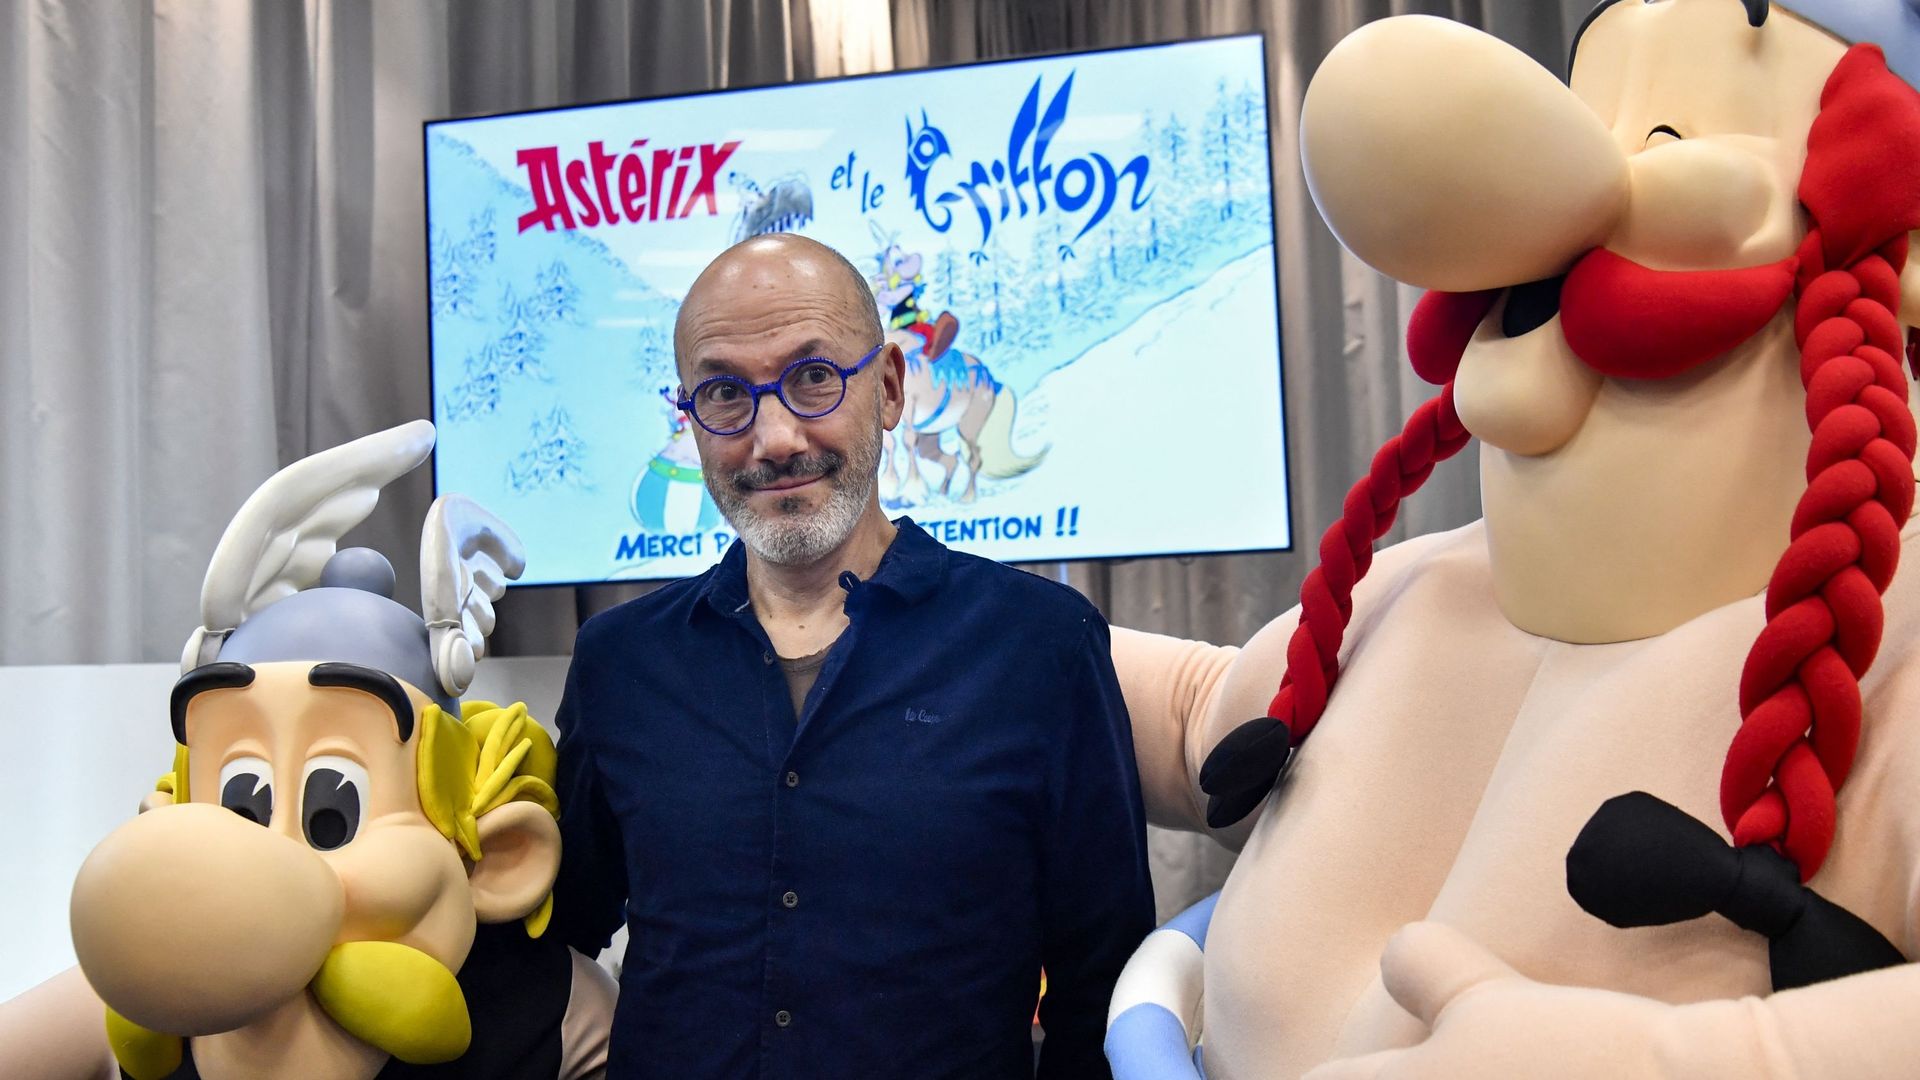 L’écrivain et dessinateur français Jean-Yves Ferri pose entre les effigies des personnages de bande dessinée Astérix et Obélix lors de la présentation du nouvel album "Astérix" aux éditions Hachette Livre à Vanves, près de Paris, le 11 octobre 2021. "Asté